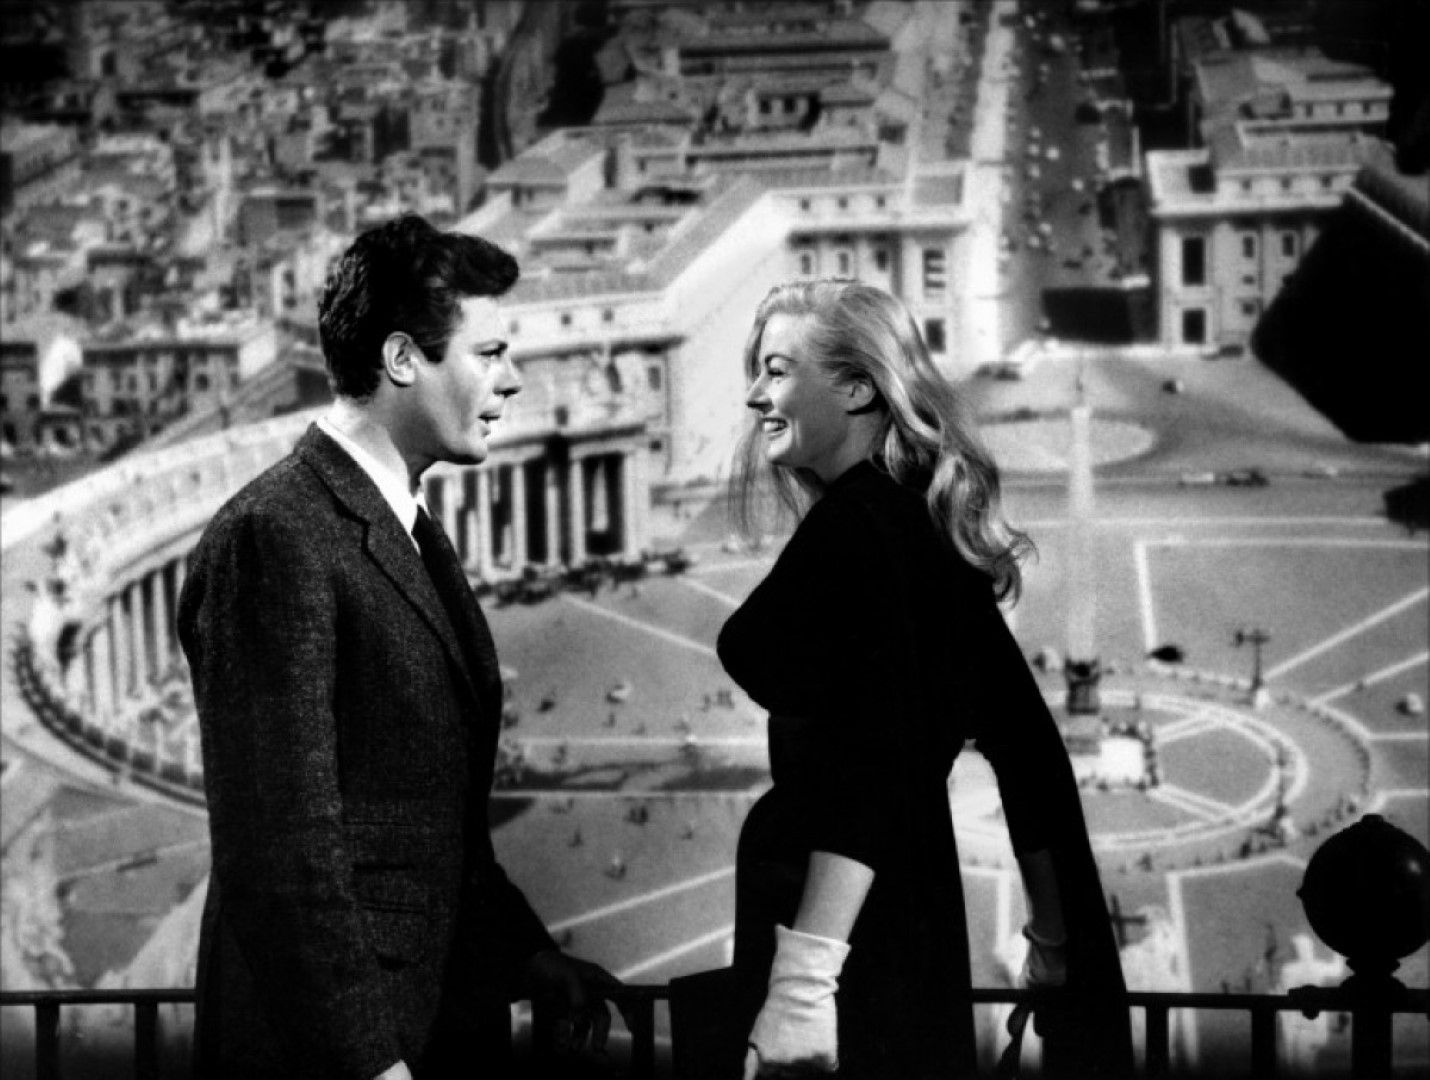 „Сладък живот“  е италианско-френски игрален филм – трагикомедия, излязъл по екраните през 1960 година, режисиран от Федерико Фелини с участието на Марчело Мастрояни, Анита Екберг и Анук Еме в главните роли. Сценарият е написан от режисьора Фелини в сътрудничество с Тулио Пинели, Енио Флаяно, Брунело Ронди и Пиер Паоло Пазолини.